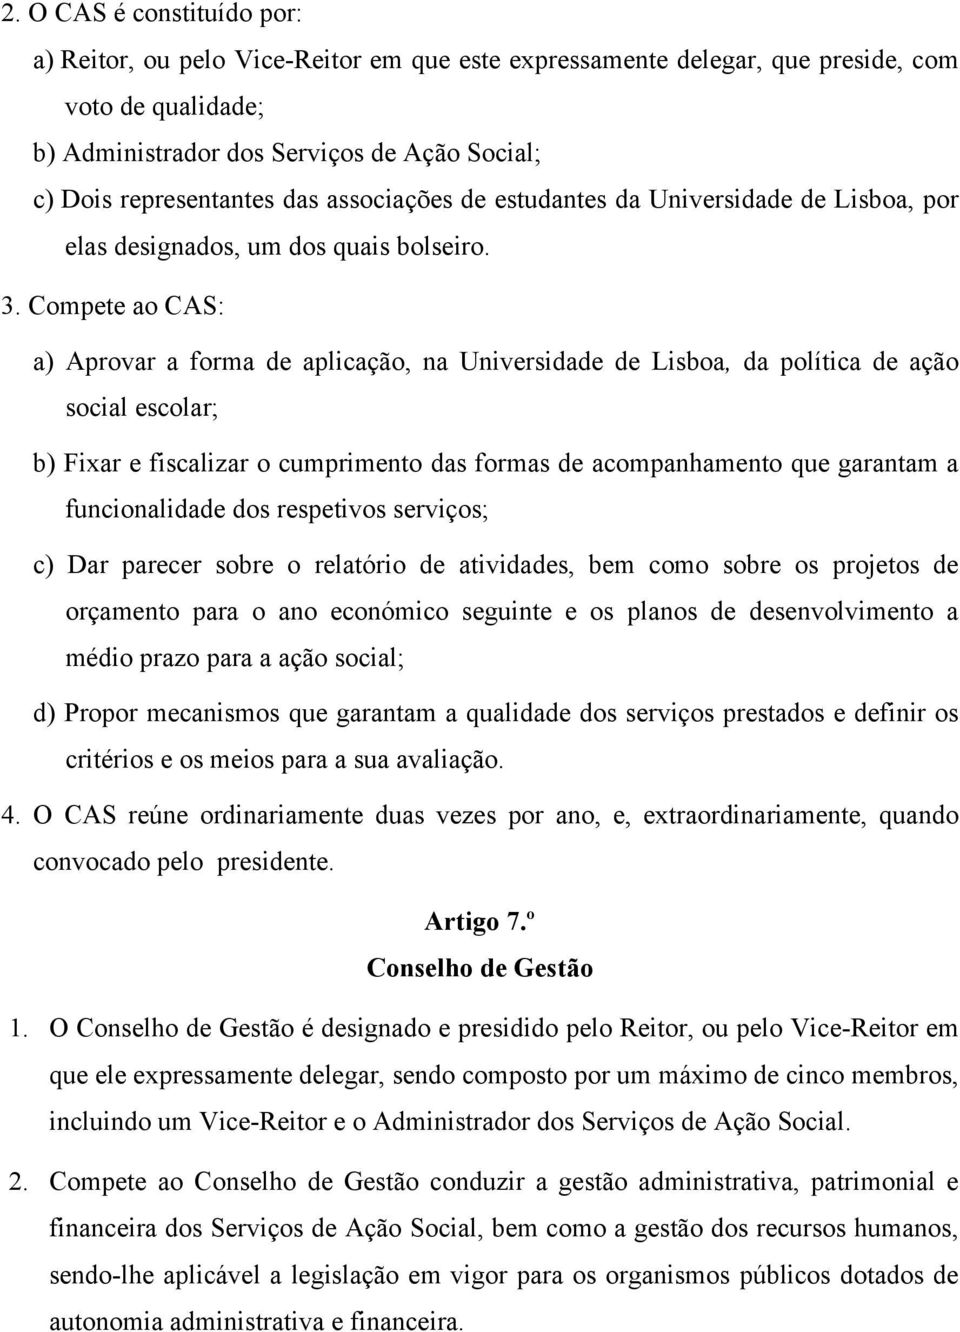 Compete ao CAS: a) Aprovar a forma de aplicação, na Universidade de Lisboa, da política de ação social escolar; b) Fixar e fiscalizar o cumprimento das formas de acompanhamento que garantam a